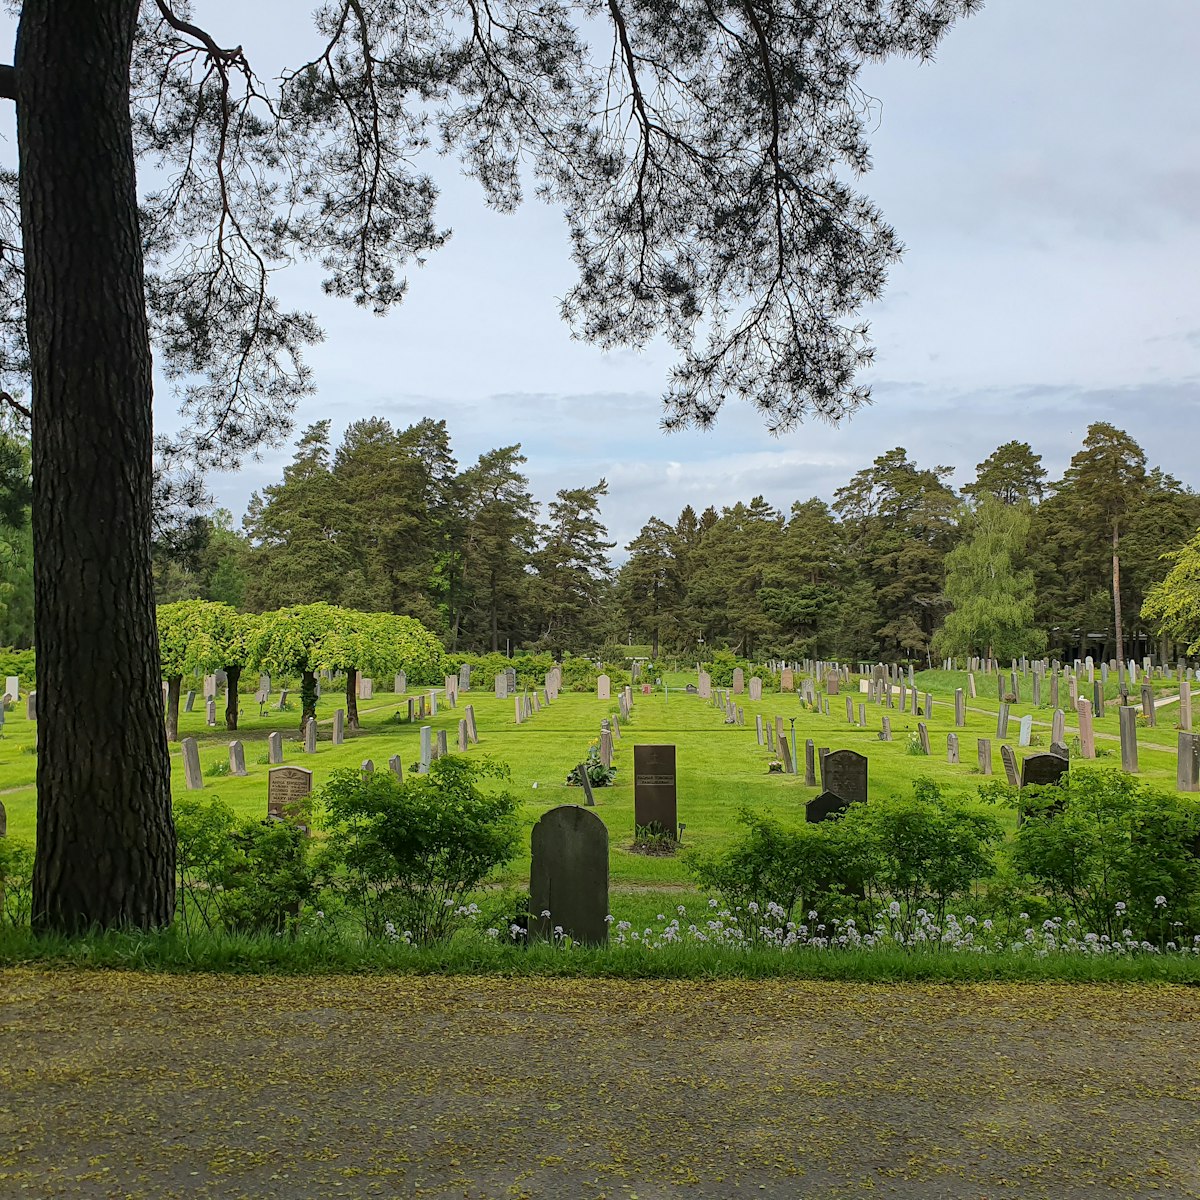 Skogskyrkogården cemetery was named a UNESCO World Heritage Site 1994